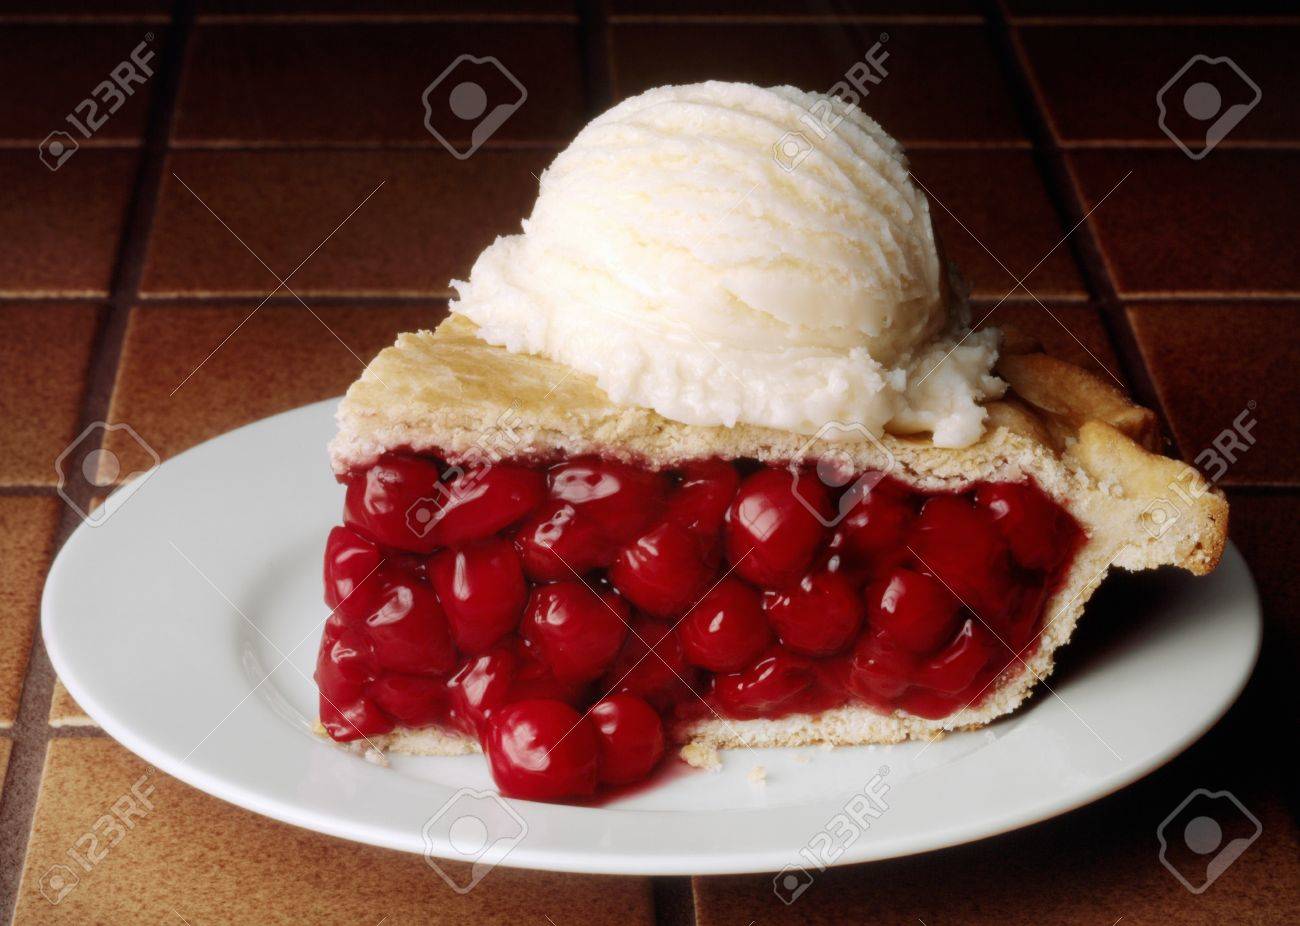 32586927-slice-of-cherry-pie-with-a-scoop-of-vanilla-ice-cream.jpg